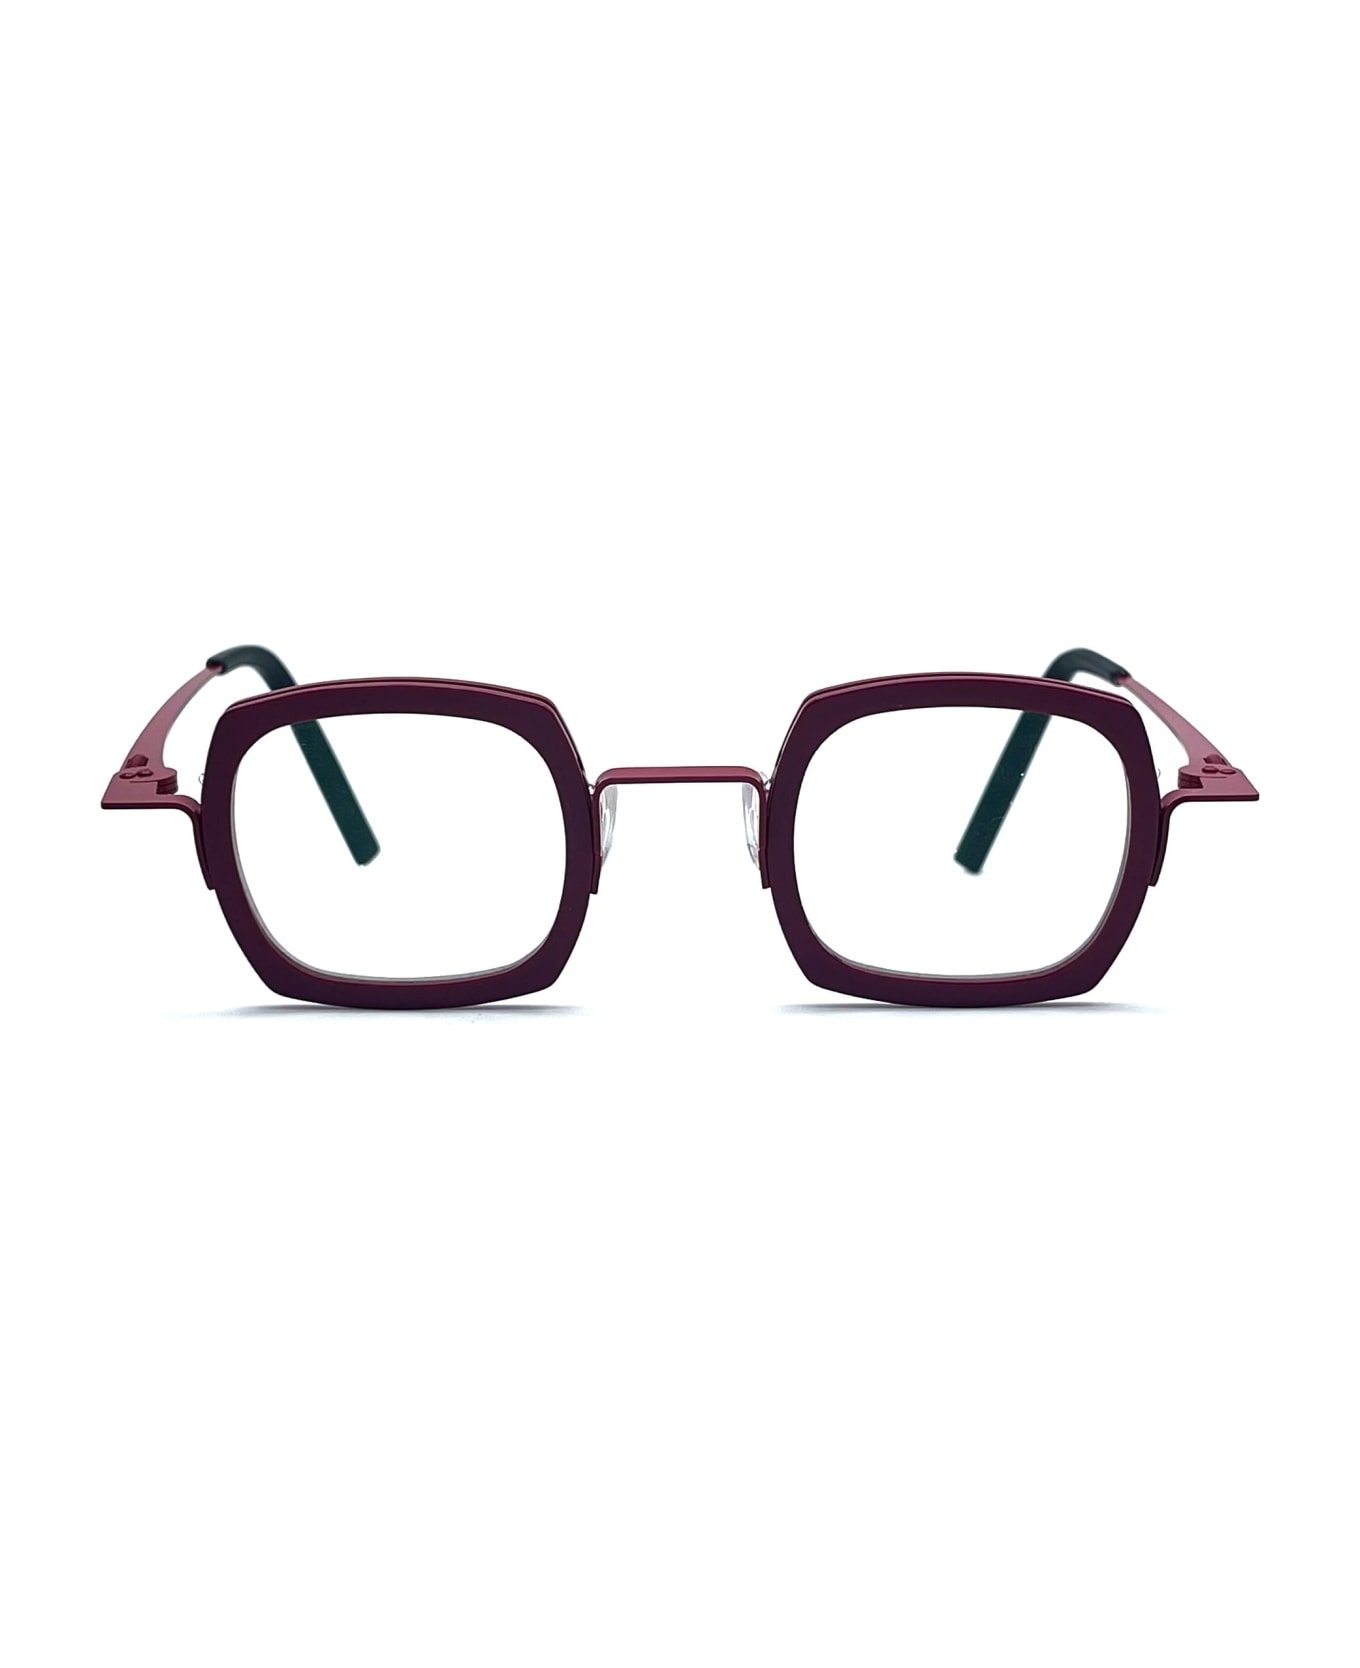 Theo Eyewear Broccoli - 48 Glasses - burgundy アイウェア